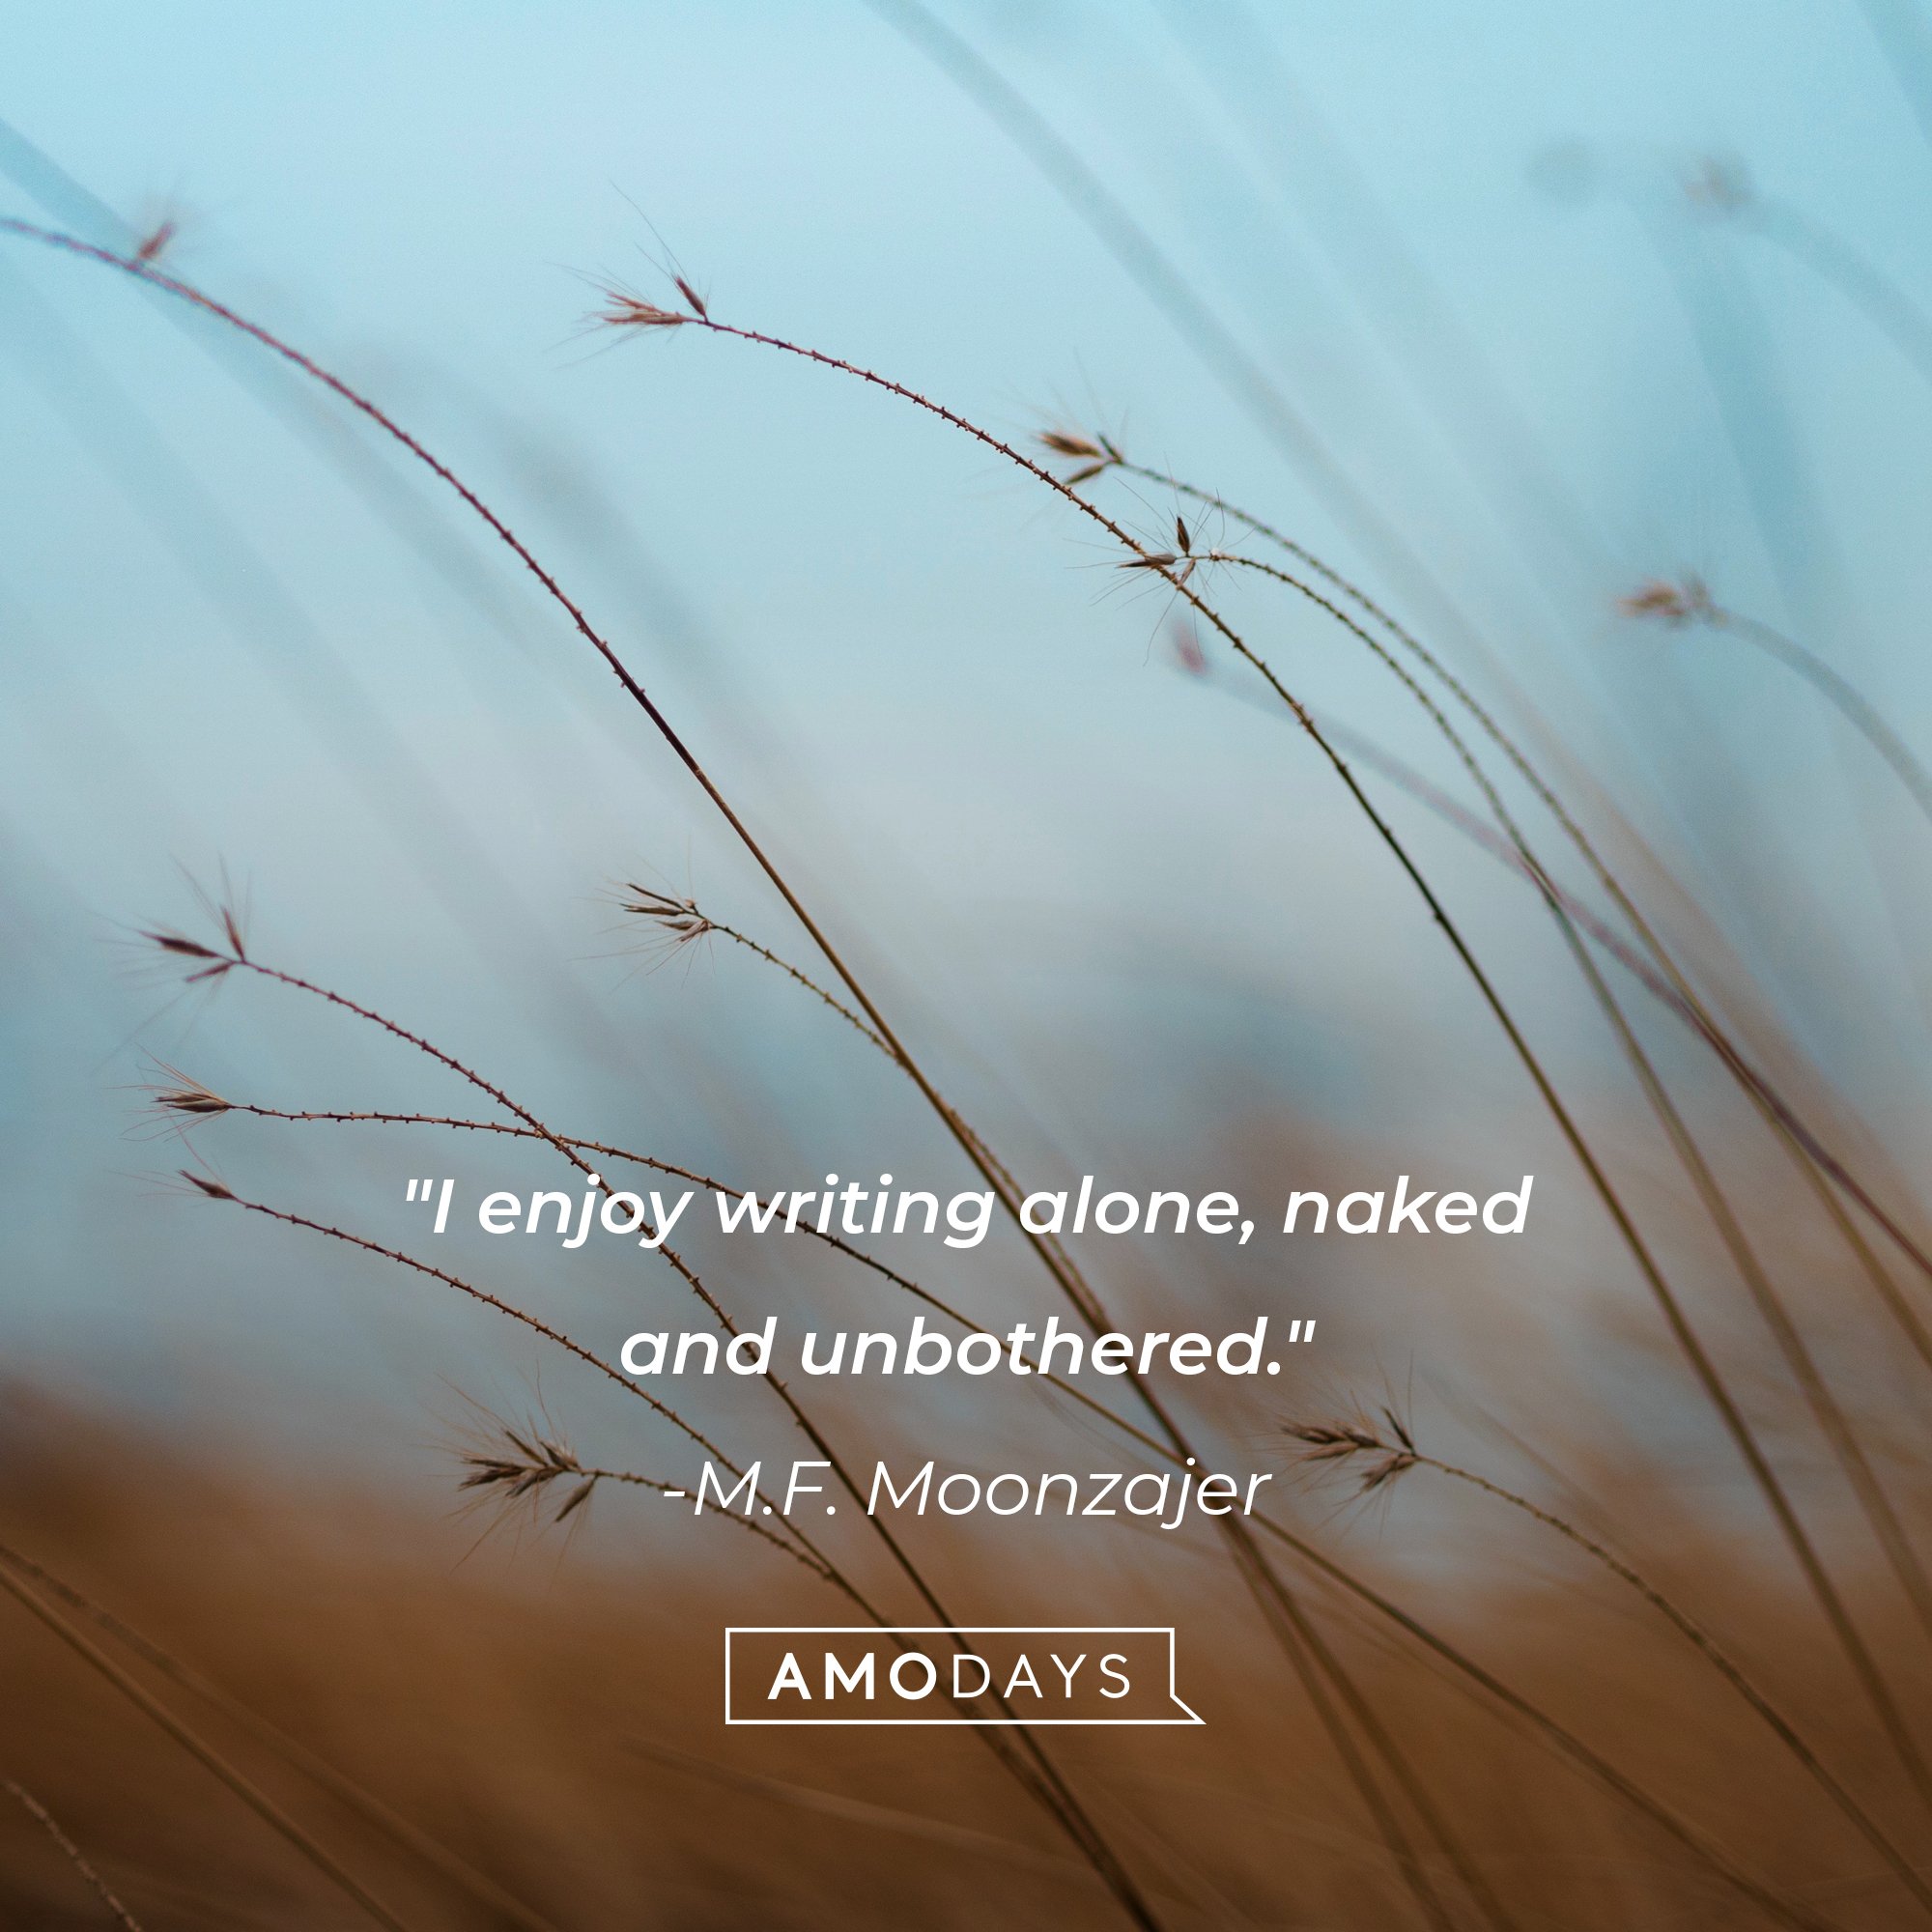 M.F. Moonzajer’s quote: "I enjoy writing alone, naked and unbothered." | Image: AmoDays